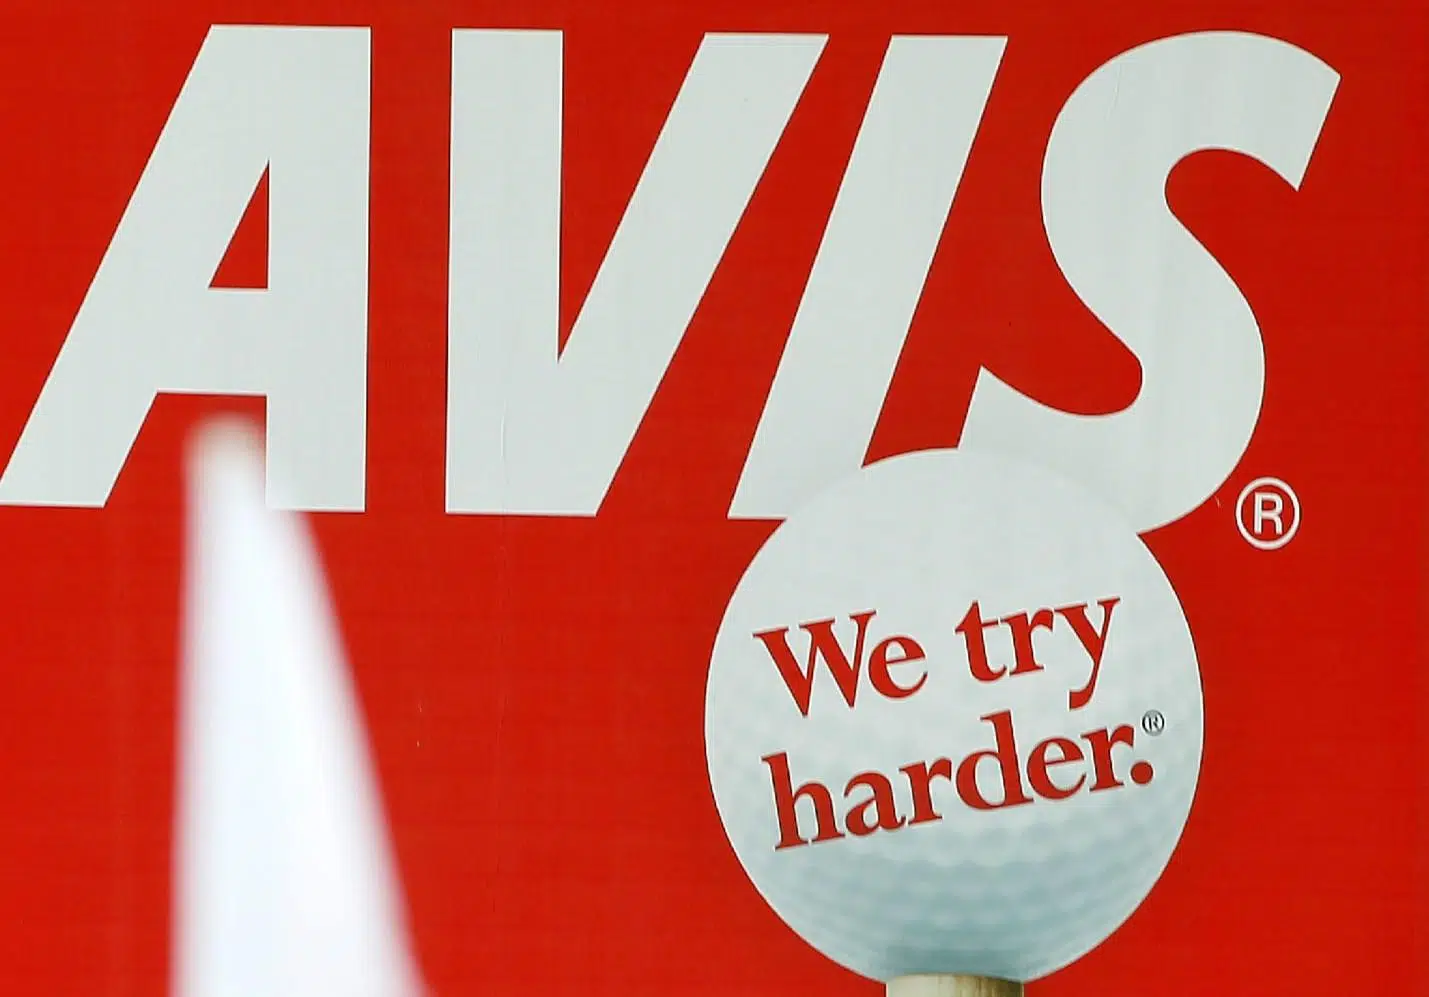 Avis - We try harder